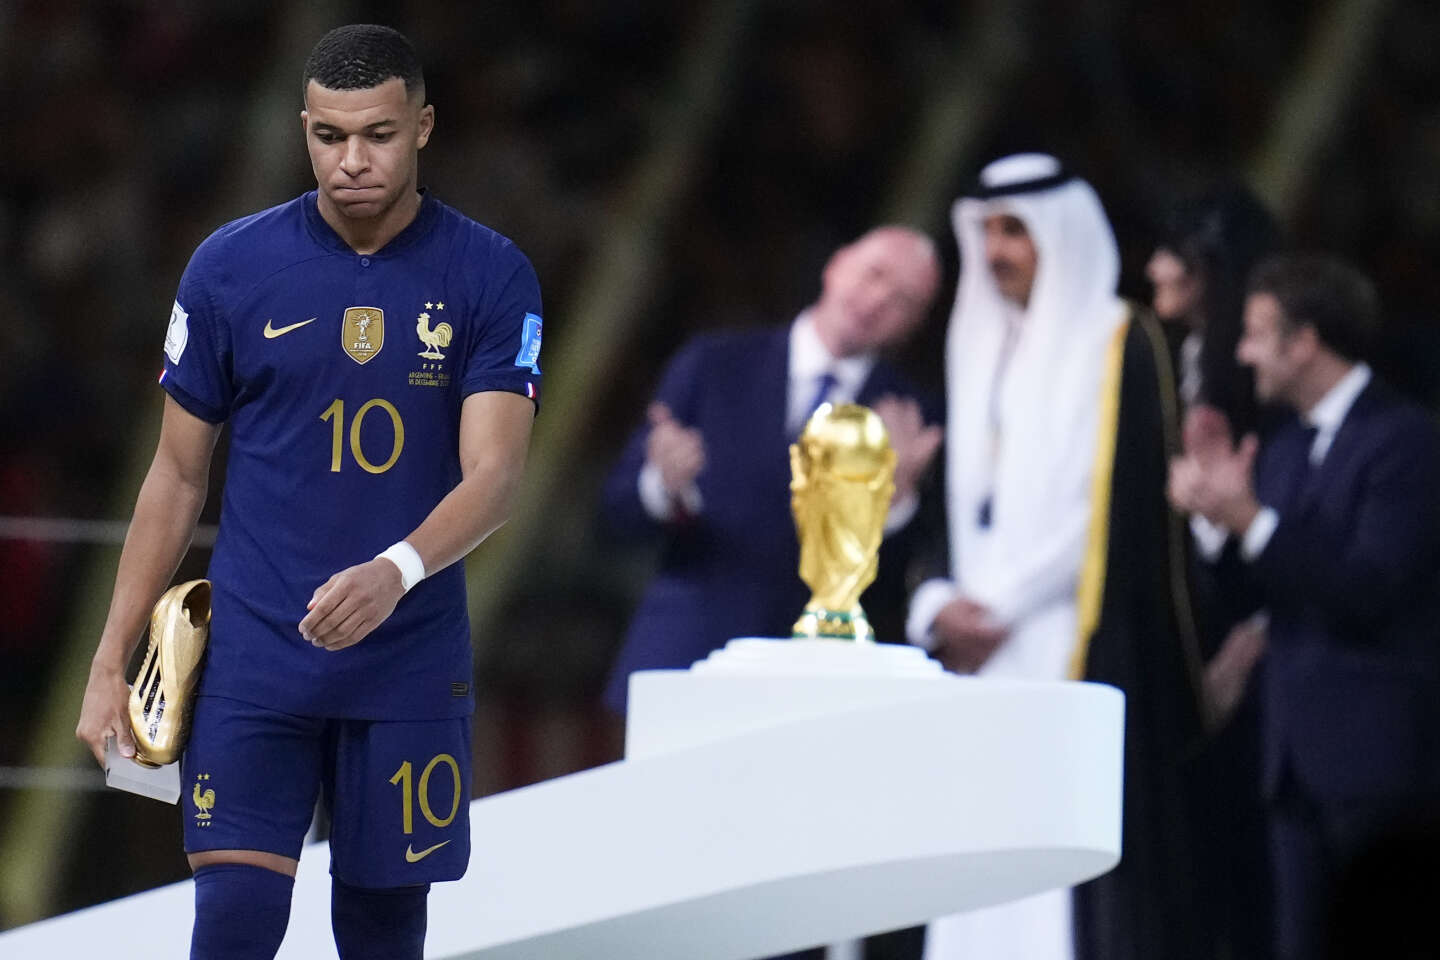 Qatar 2022: Cette finale est bien plus qu'un duel Messi-Mbappé